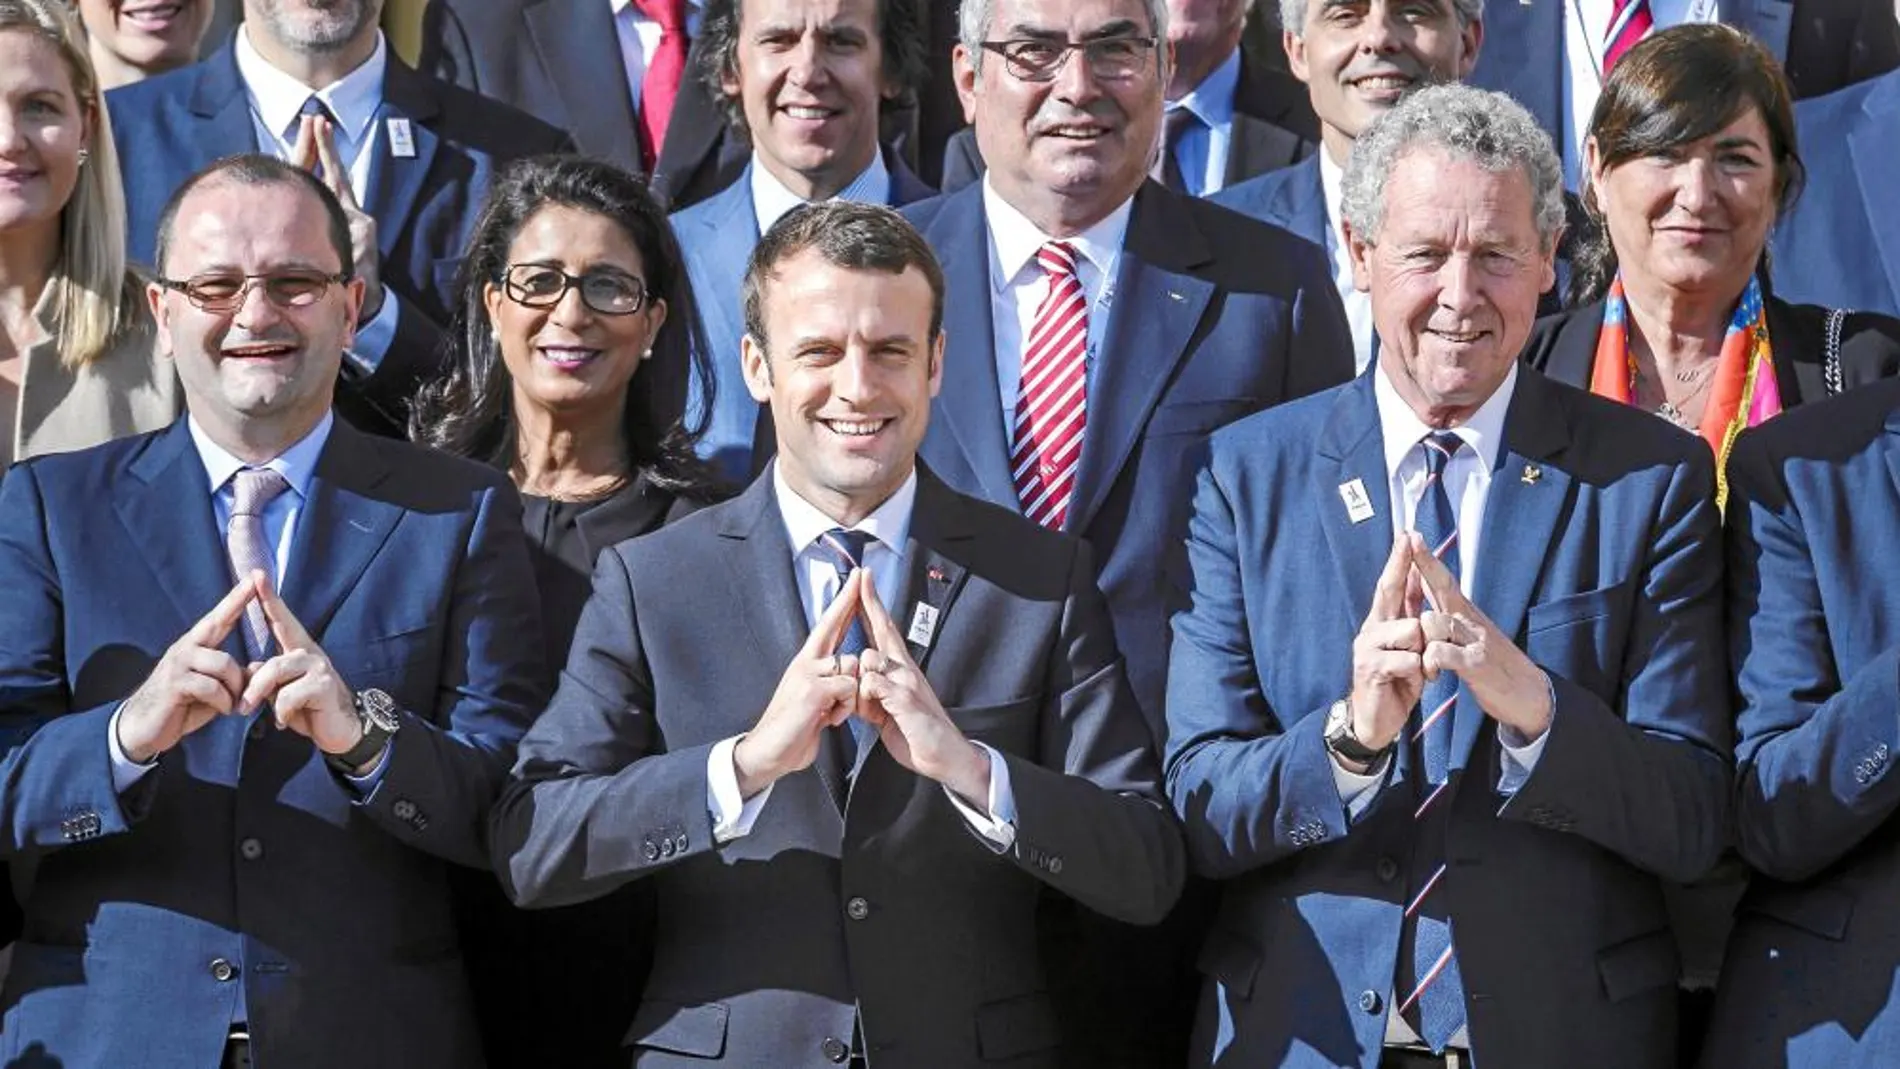 APOYO A PARÍS 2024. El presidente francés, Emmanuel Macron, posa ayer con los miembros de la candidatura olímpica de la capital